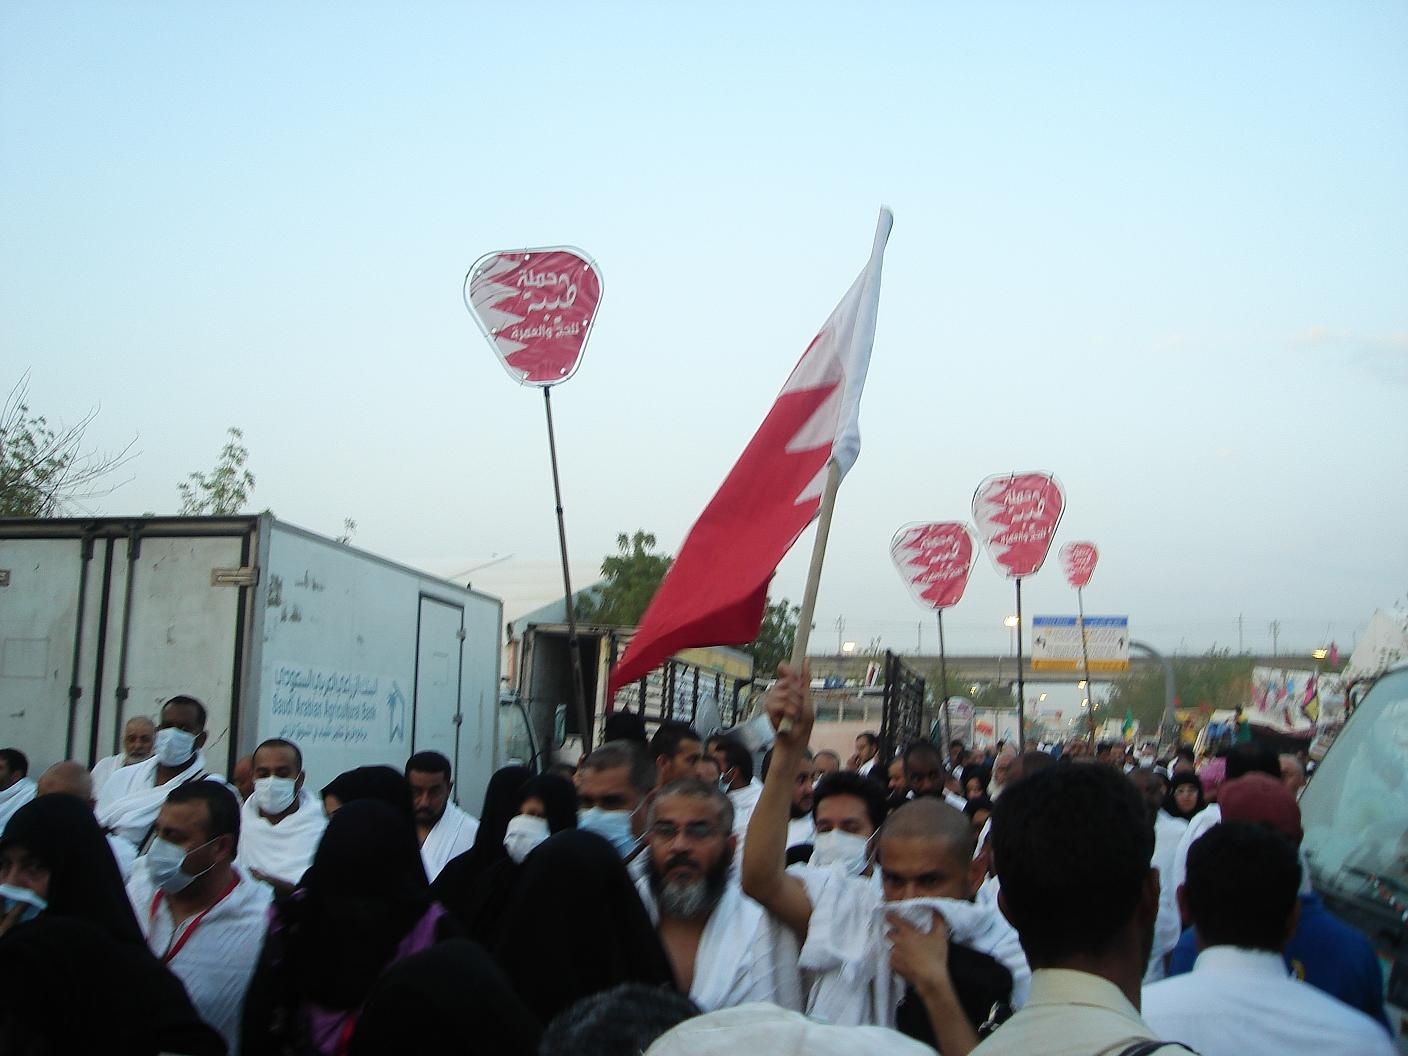 صور لنفرة حجاج بحرينيين من عرفة الى مزدلفة مساء امس